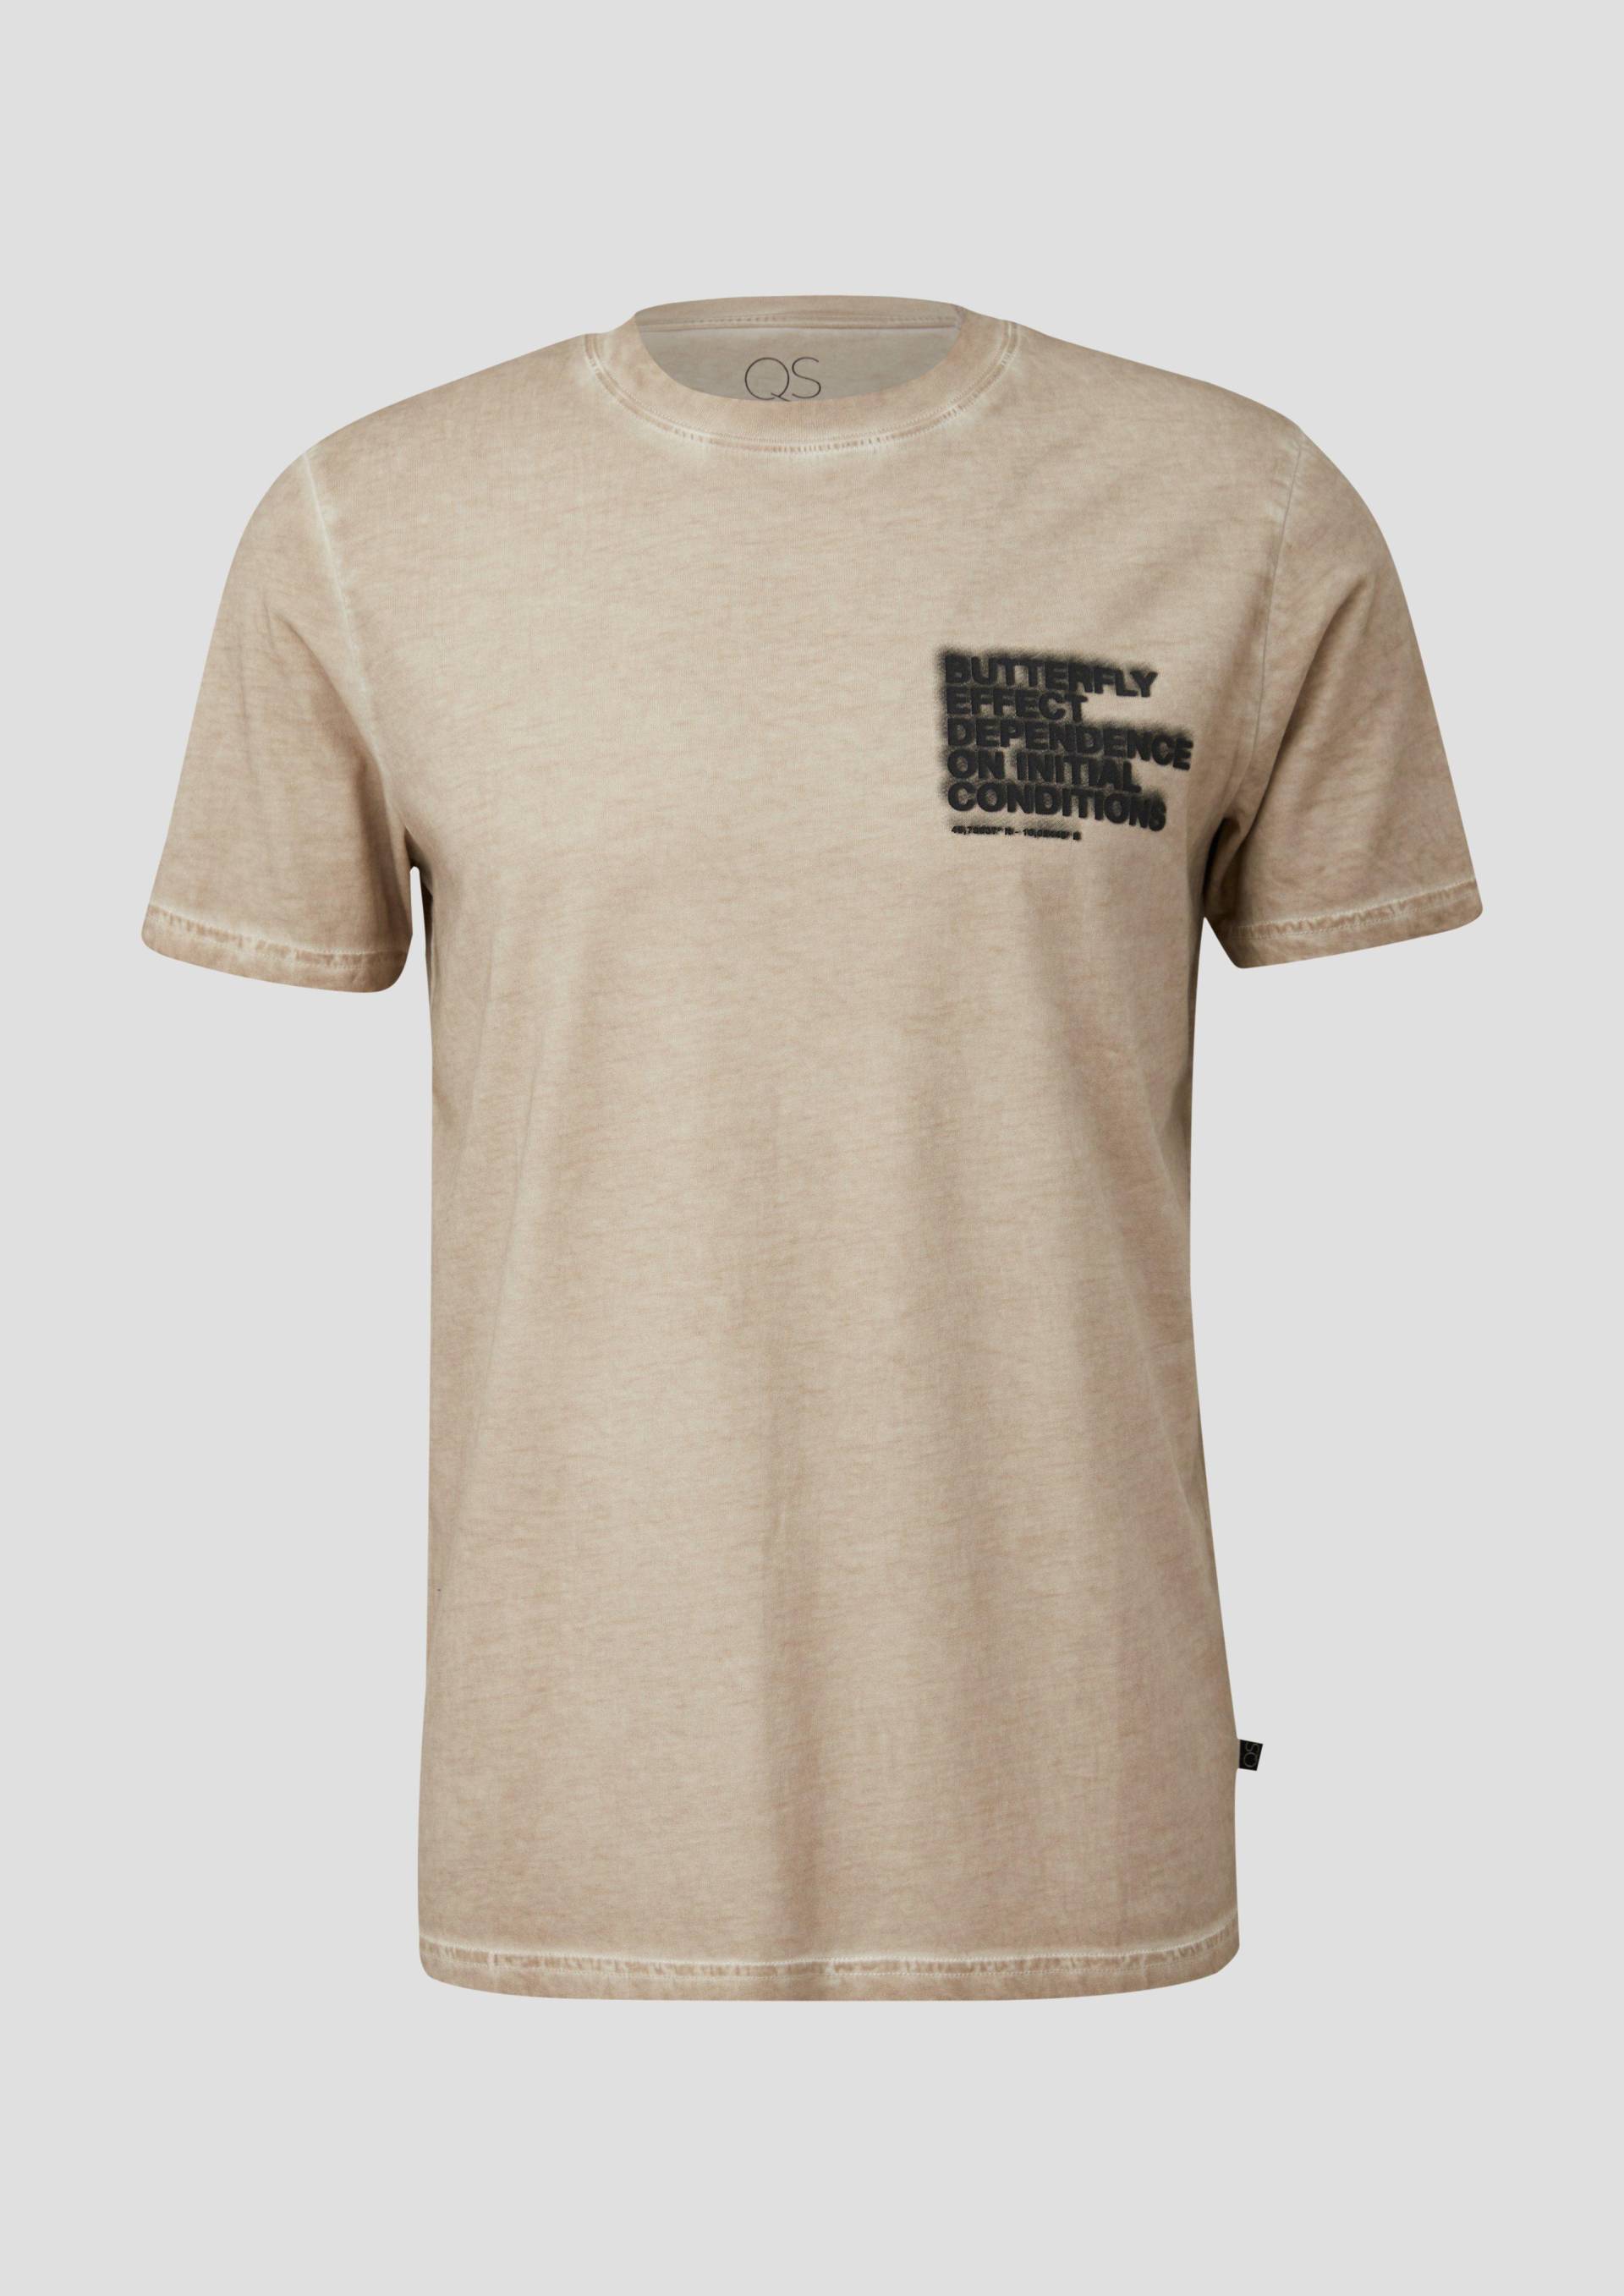 QS - T-Shirt mit Frontprint, Herren, Beige von QS